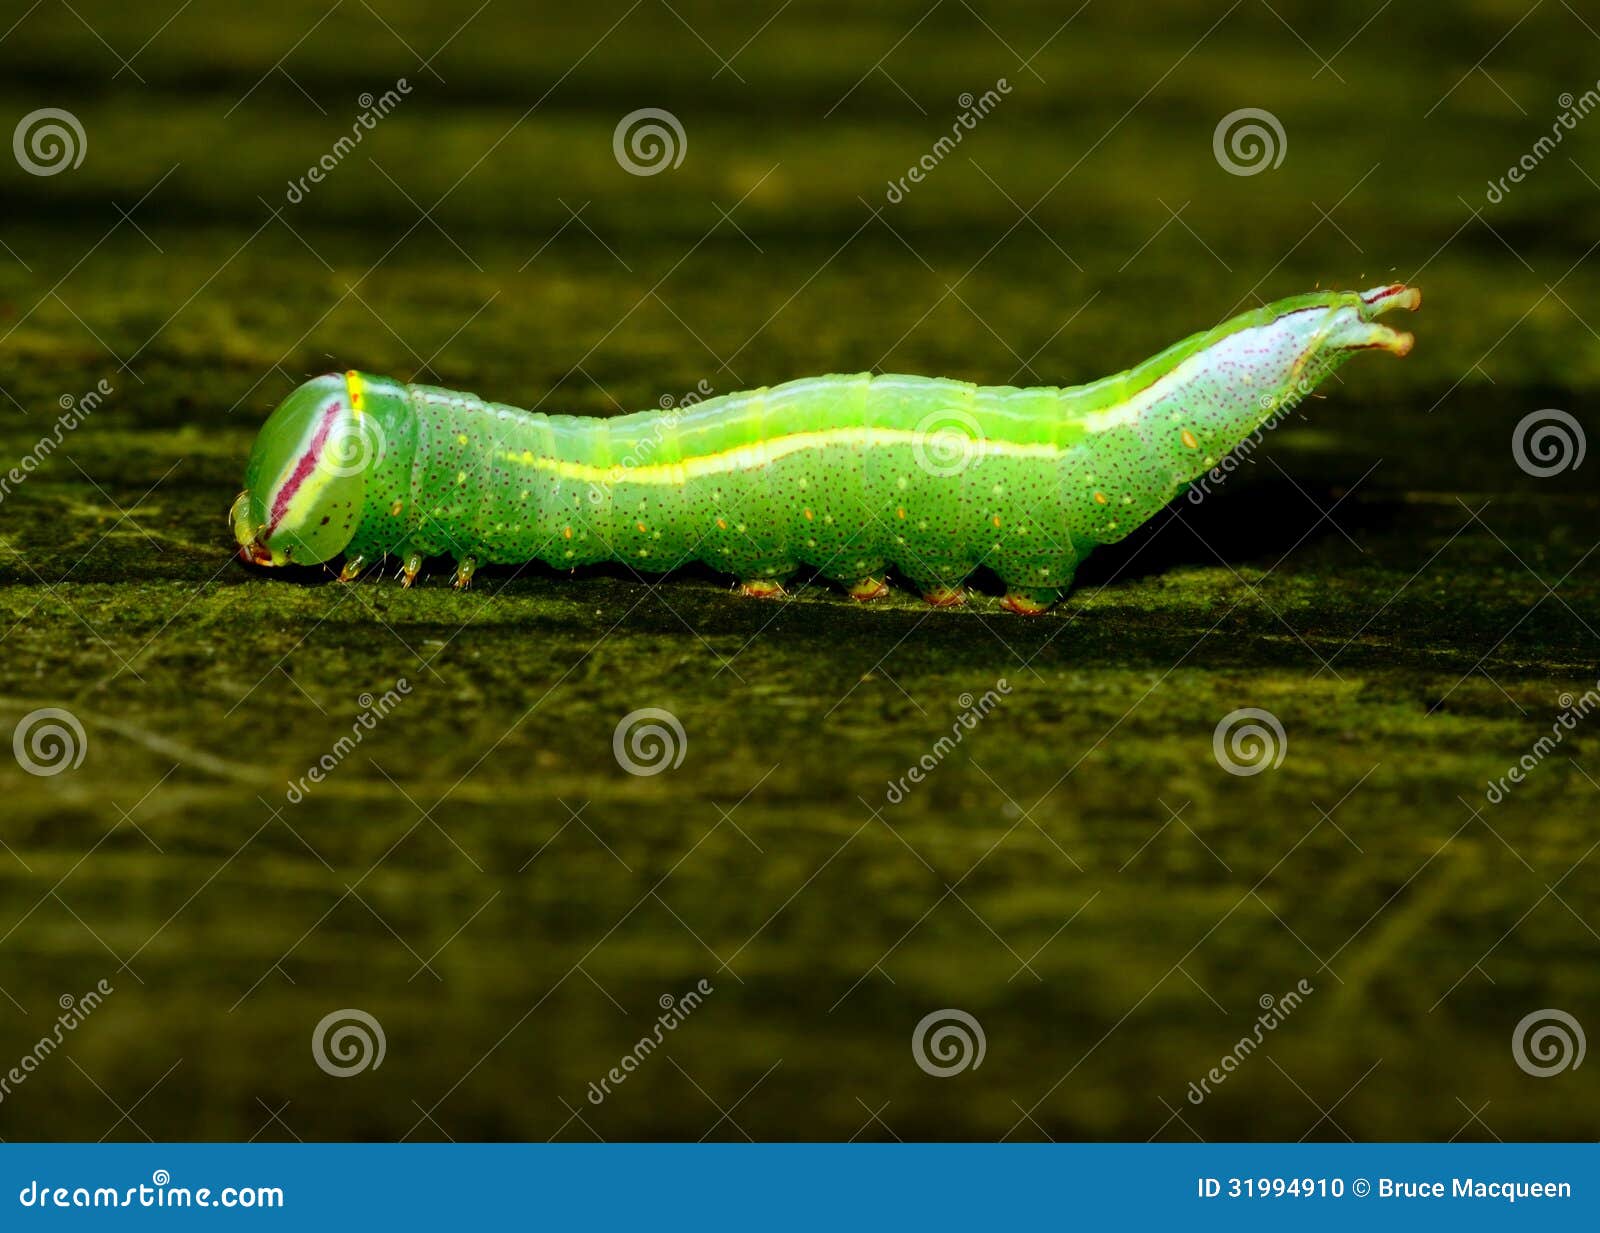 saddled prominent caterpillar